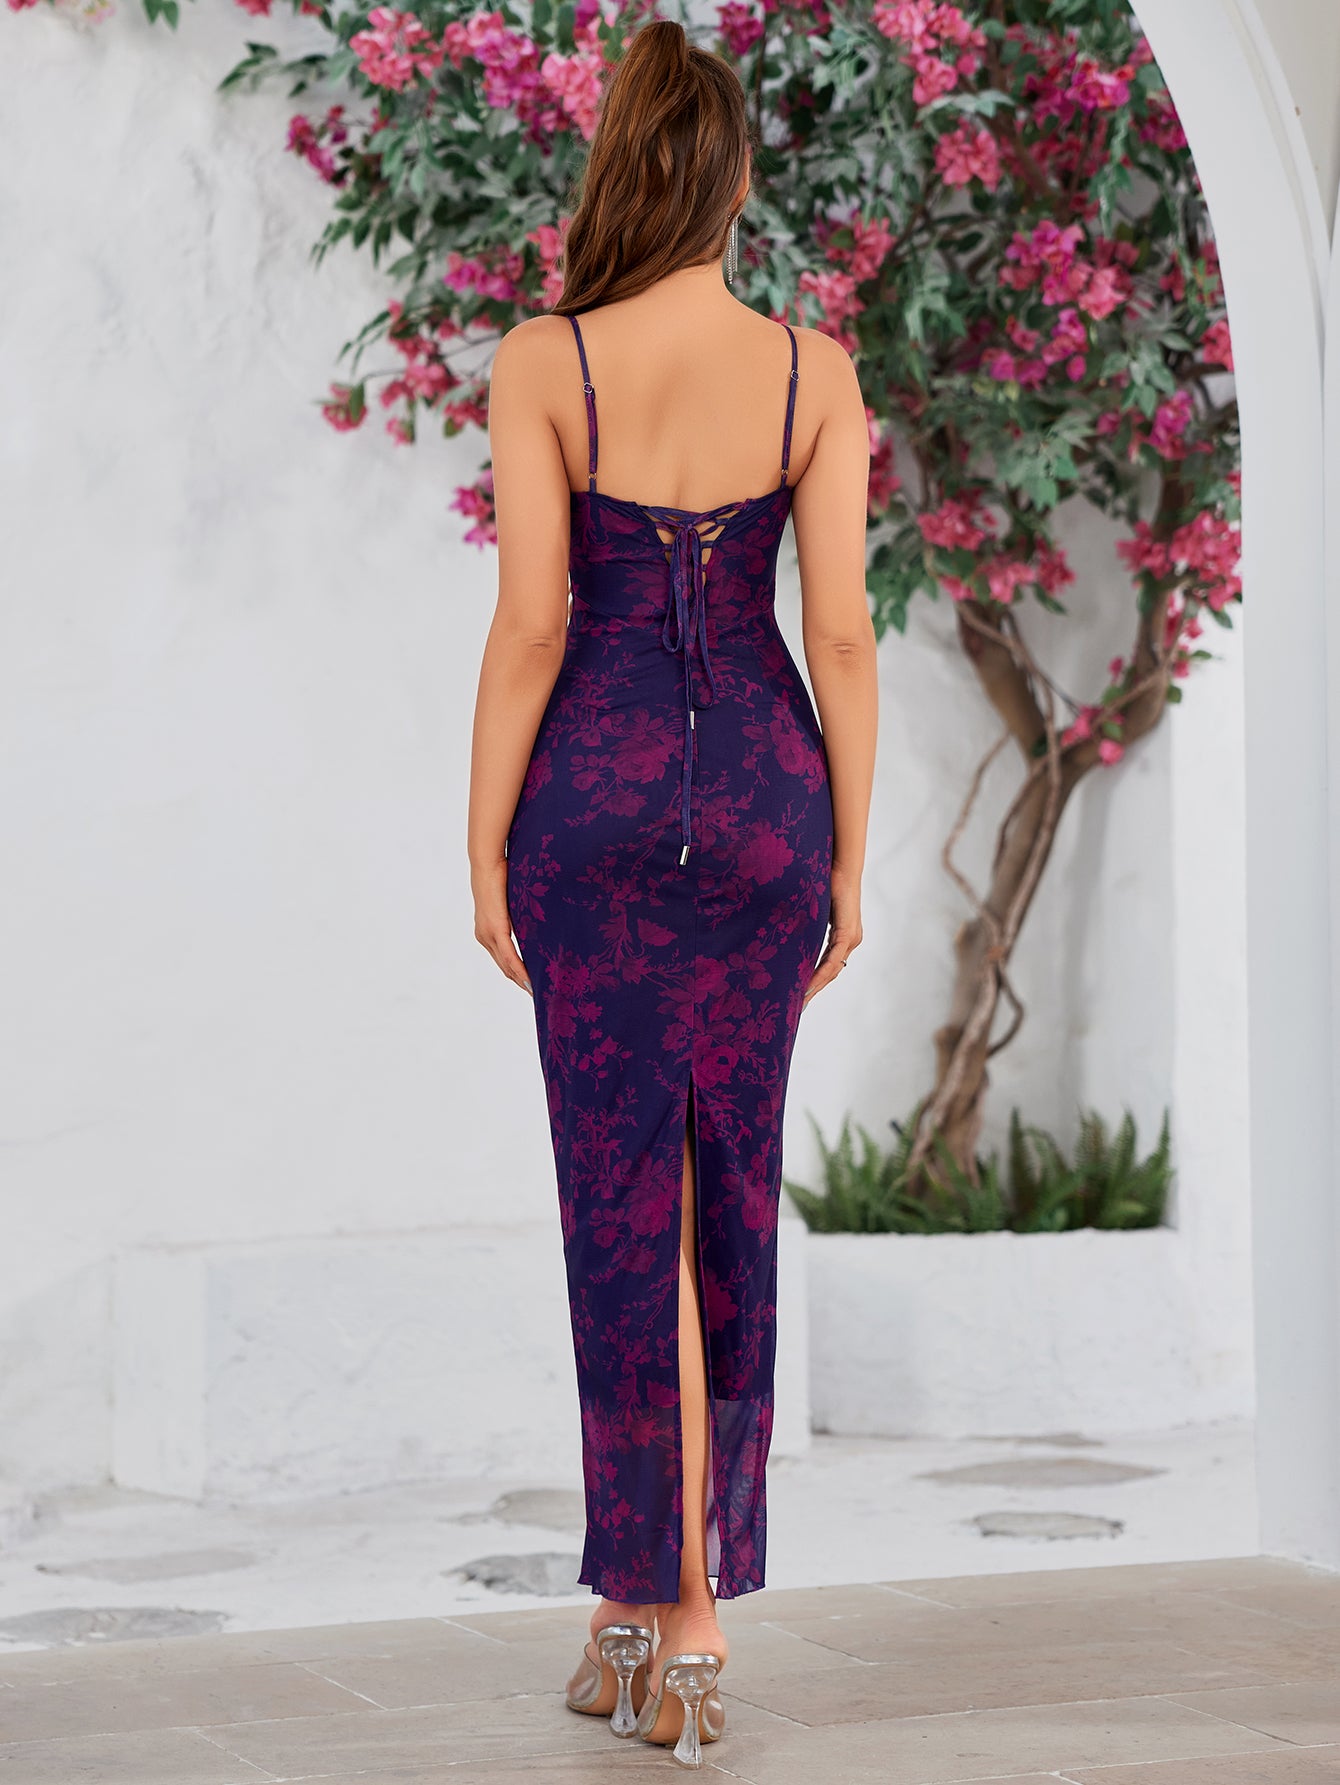 floral lace trim tie back bodycon dress#color_purple